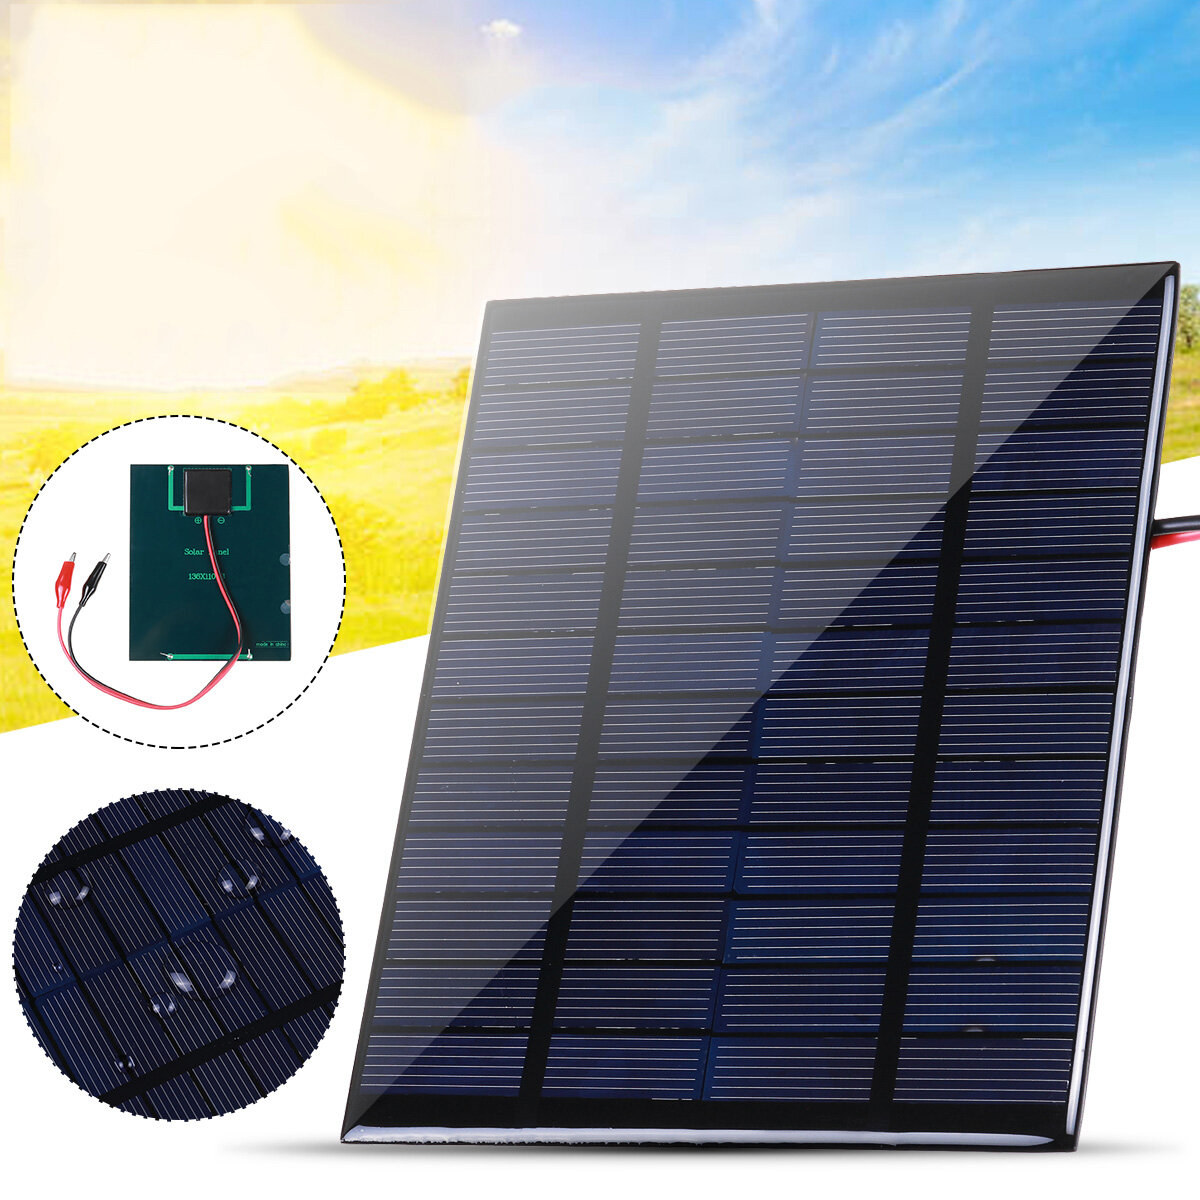 10W solární panel s klipy Polykrystalický silikonový solární článek IP65 Přenosný vodotěsný venkovní kemp